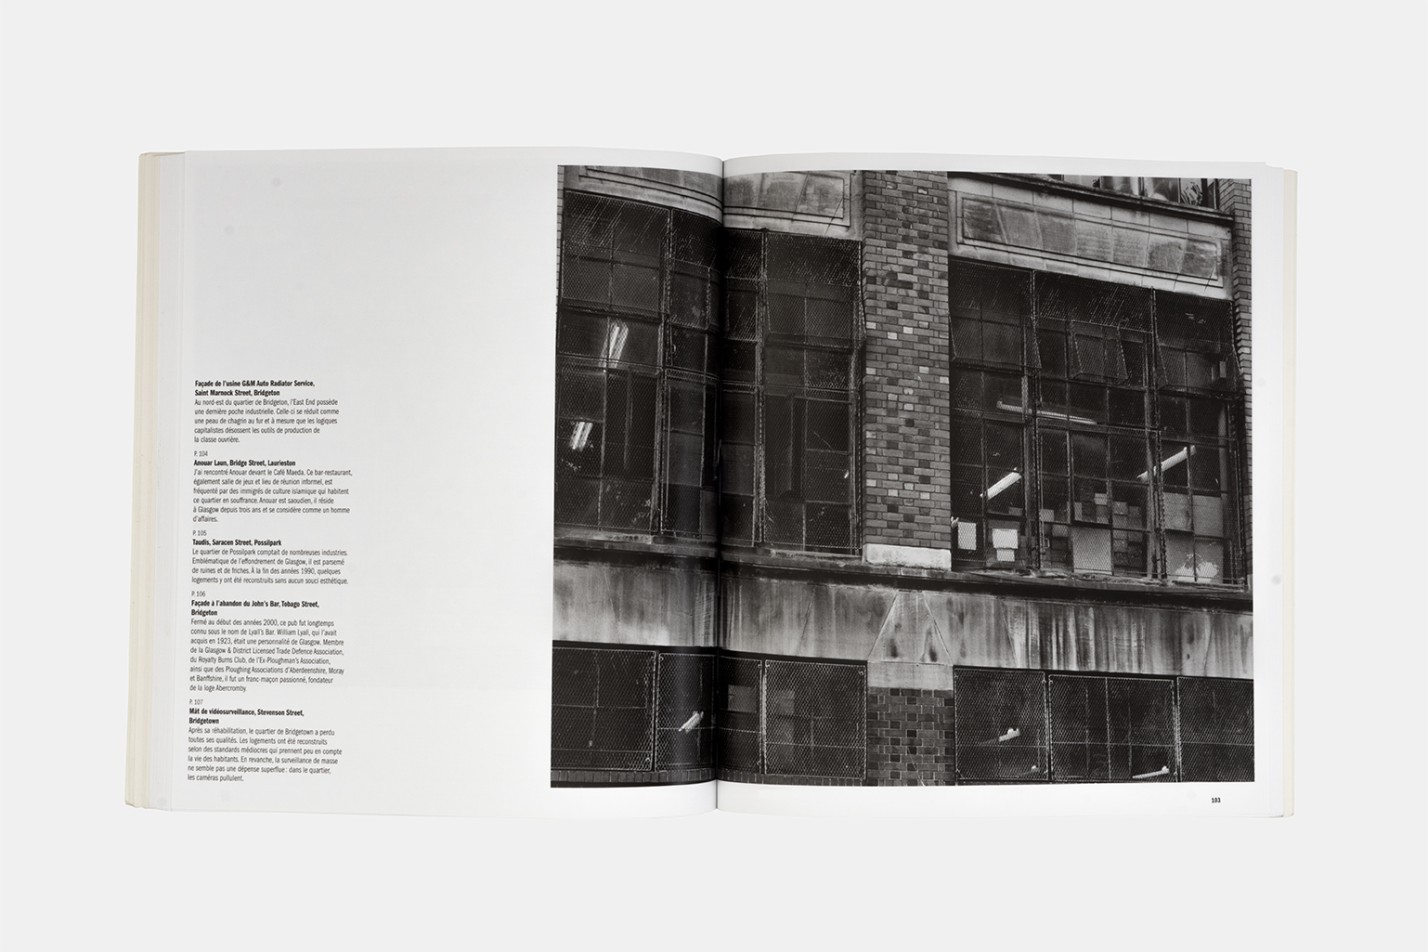 Camille Fallet - Grass Grows - *Grass Grows*
Le Point du jour, 19,7 x 22,4 cm, broché avec jaquette, 122 photographies en couleur et noir & blanc, 168 pages, avec le texte 